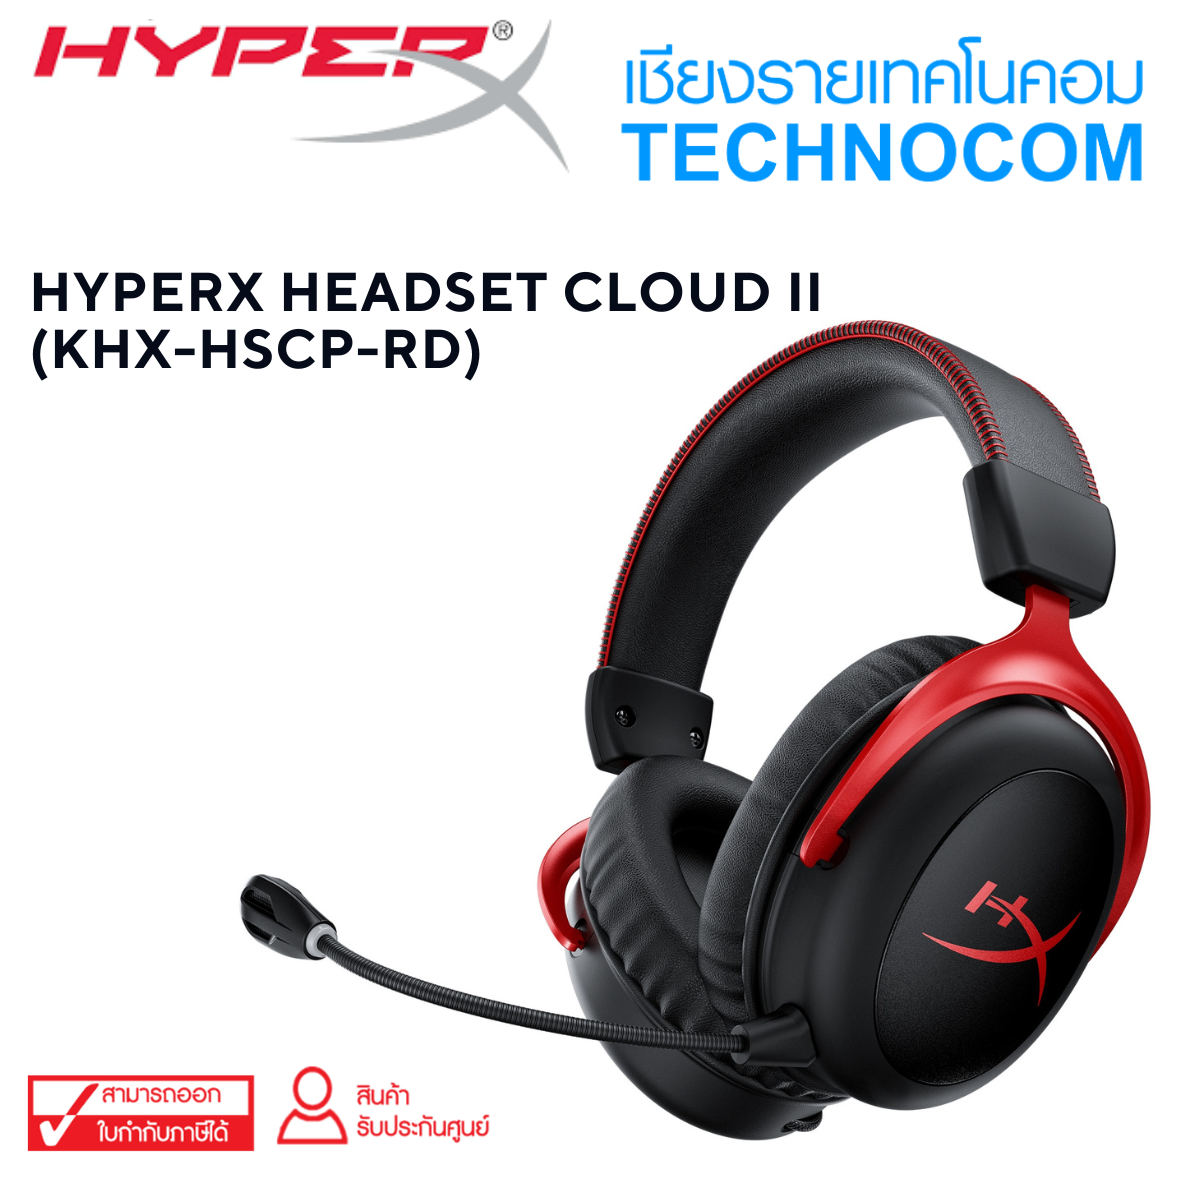 HYPERX HEADSET CLOUD II (KHK-HSCP-RD)